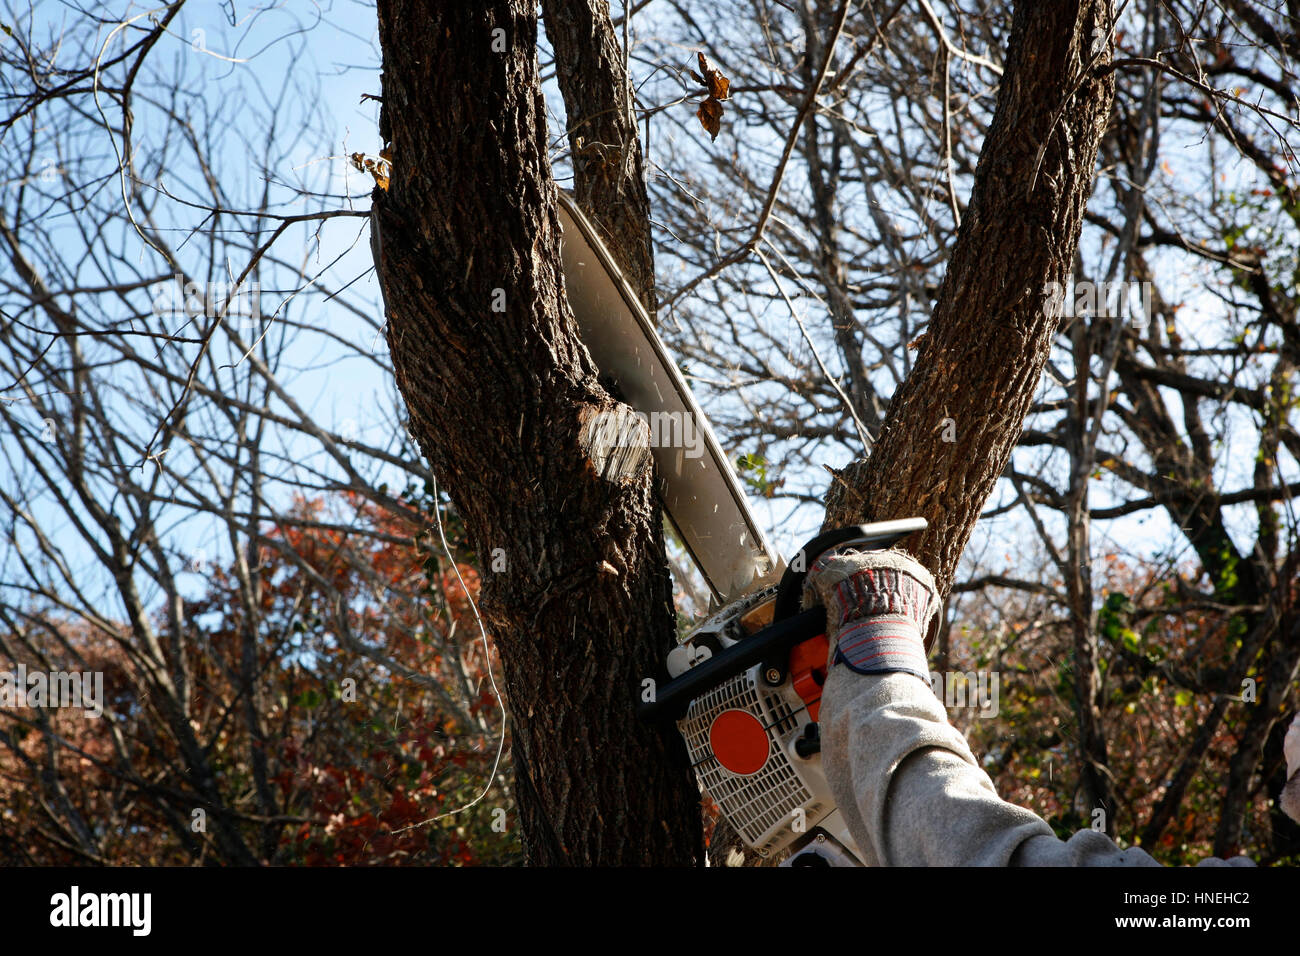  Speichern Download Vorschau trimmen Baum mit elektrischen Säge - ökologische Arbeit Hand des Arbeiters Stockfoto